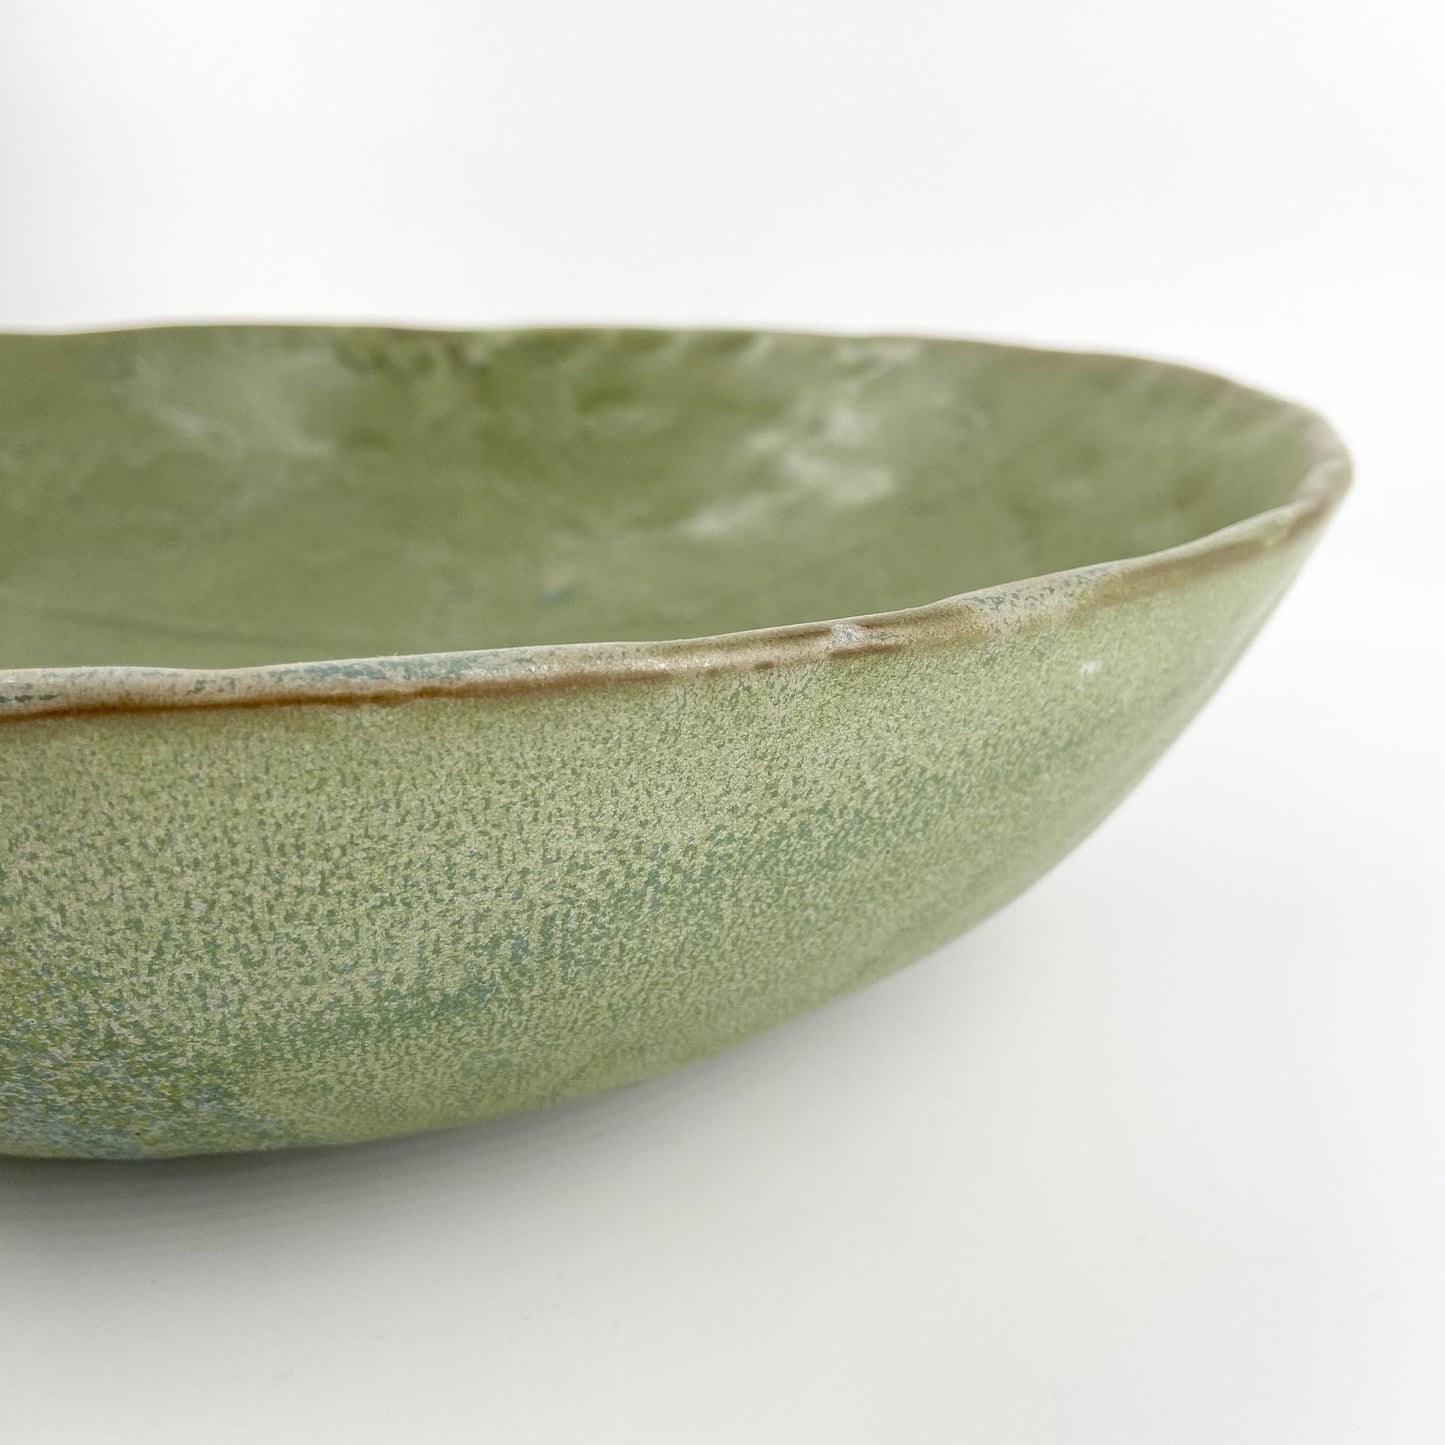 Bowl - Glazed Stoneware - Serving Sized